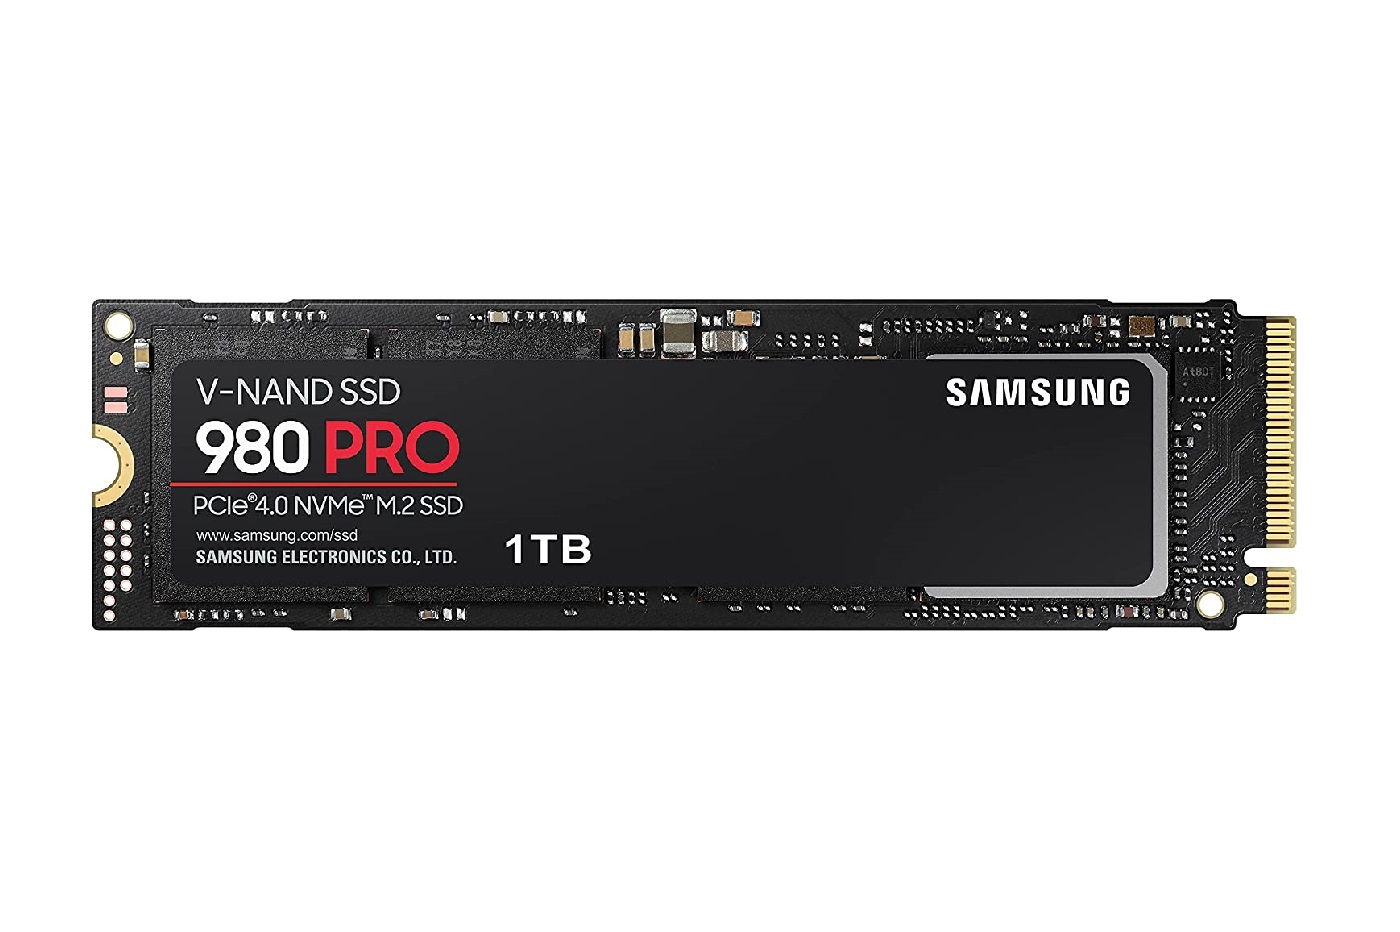 Avec -41% de remise, le SSD NVMe Samsung 980 Pro est une vrai pépite sur Amazon